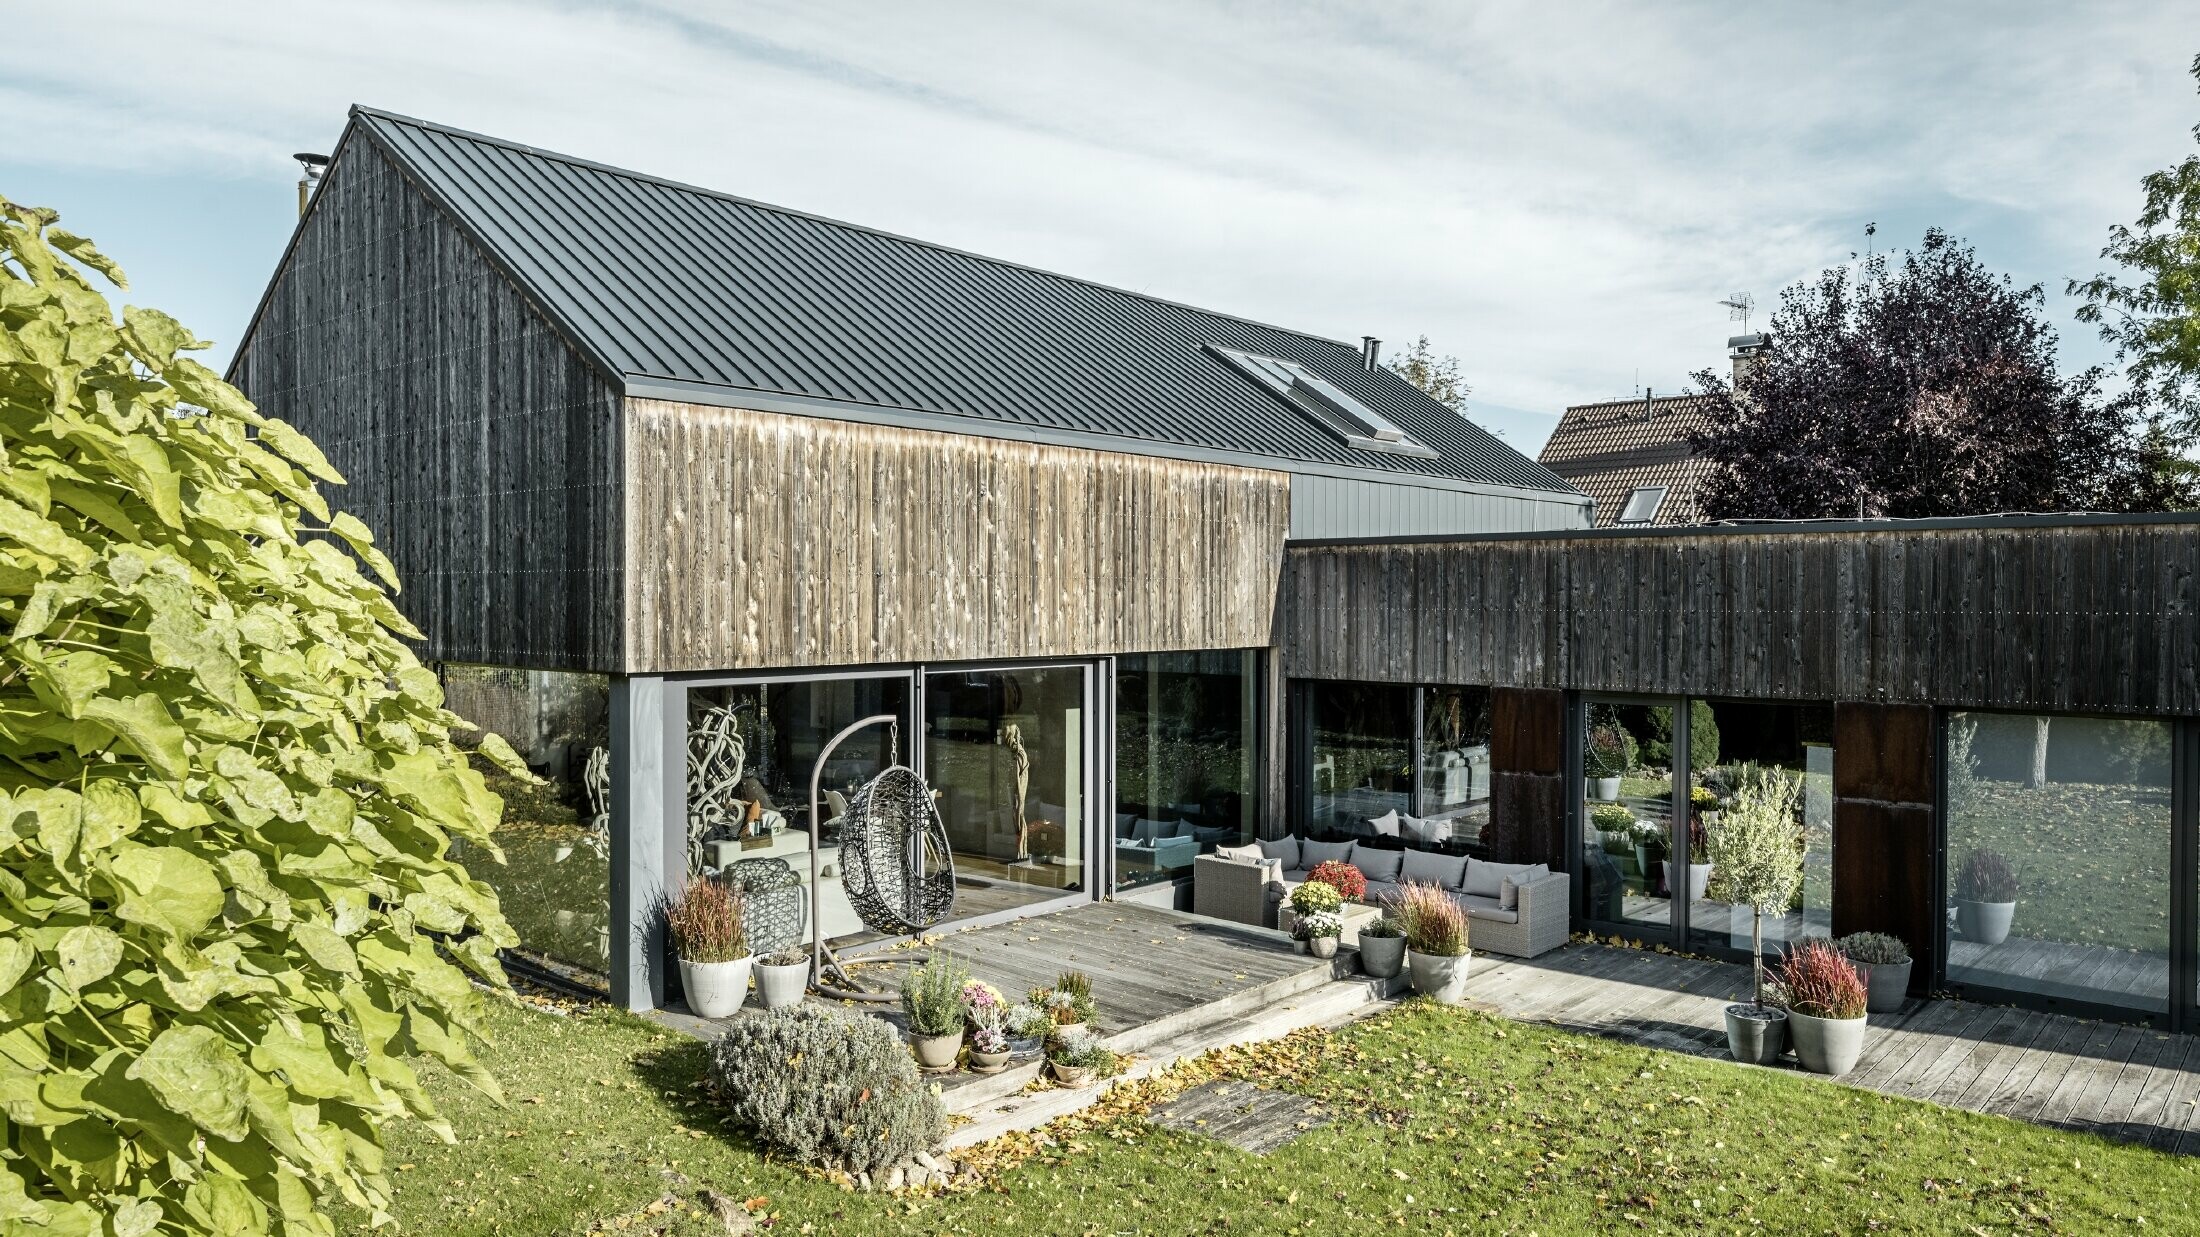 Enodružinska hiša z dvokapno streho, obložena z dvojnimi stoječimi zgibi PREFALZ v antracitni barvi in z leseno fasado. Z lepo leseno teraso in velikimi okenskimi površinami v pritličju.